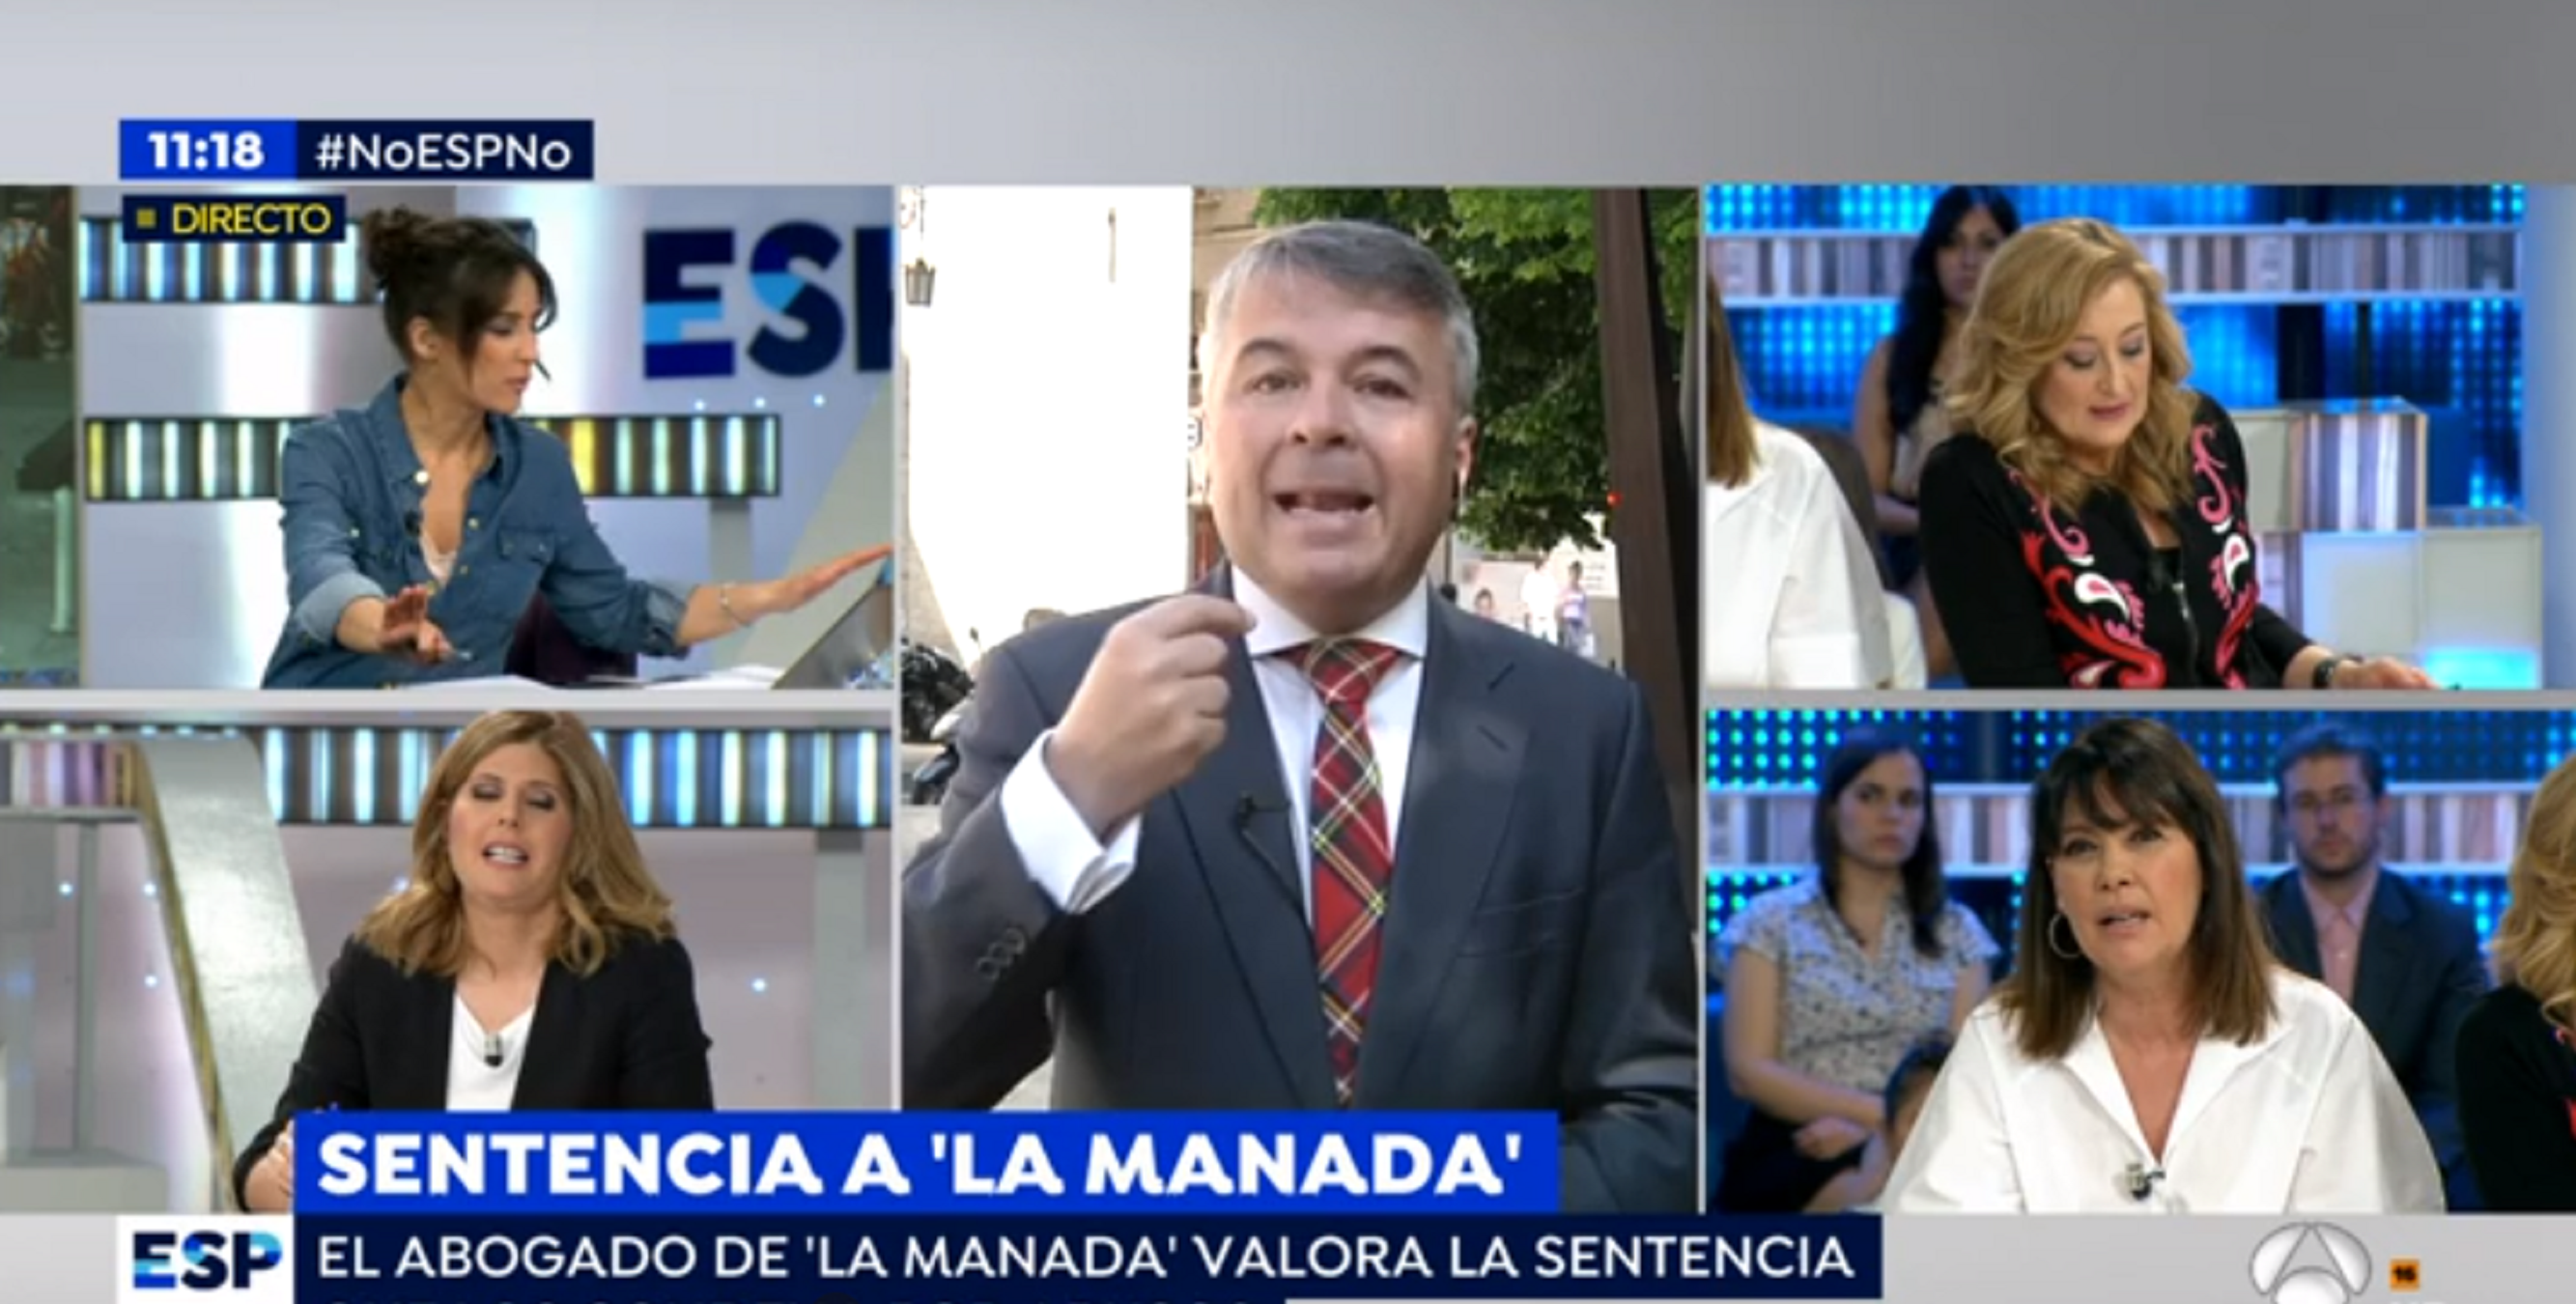 Insultos a las tertulianas de Antena 3 que critican a La Manada: "¡Histéricas!"